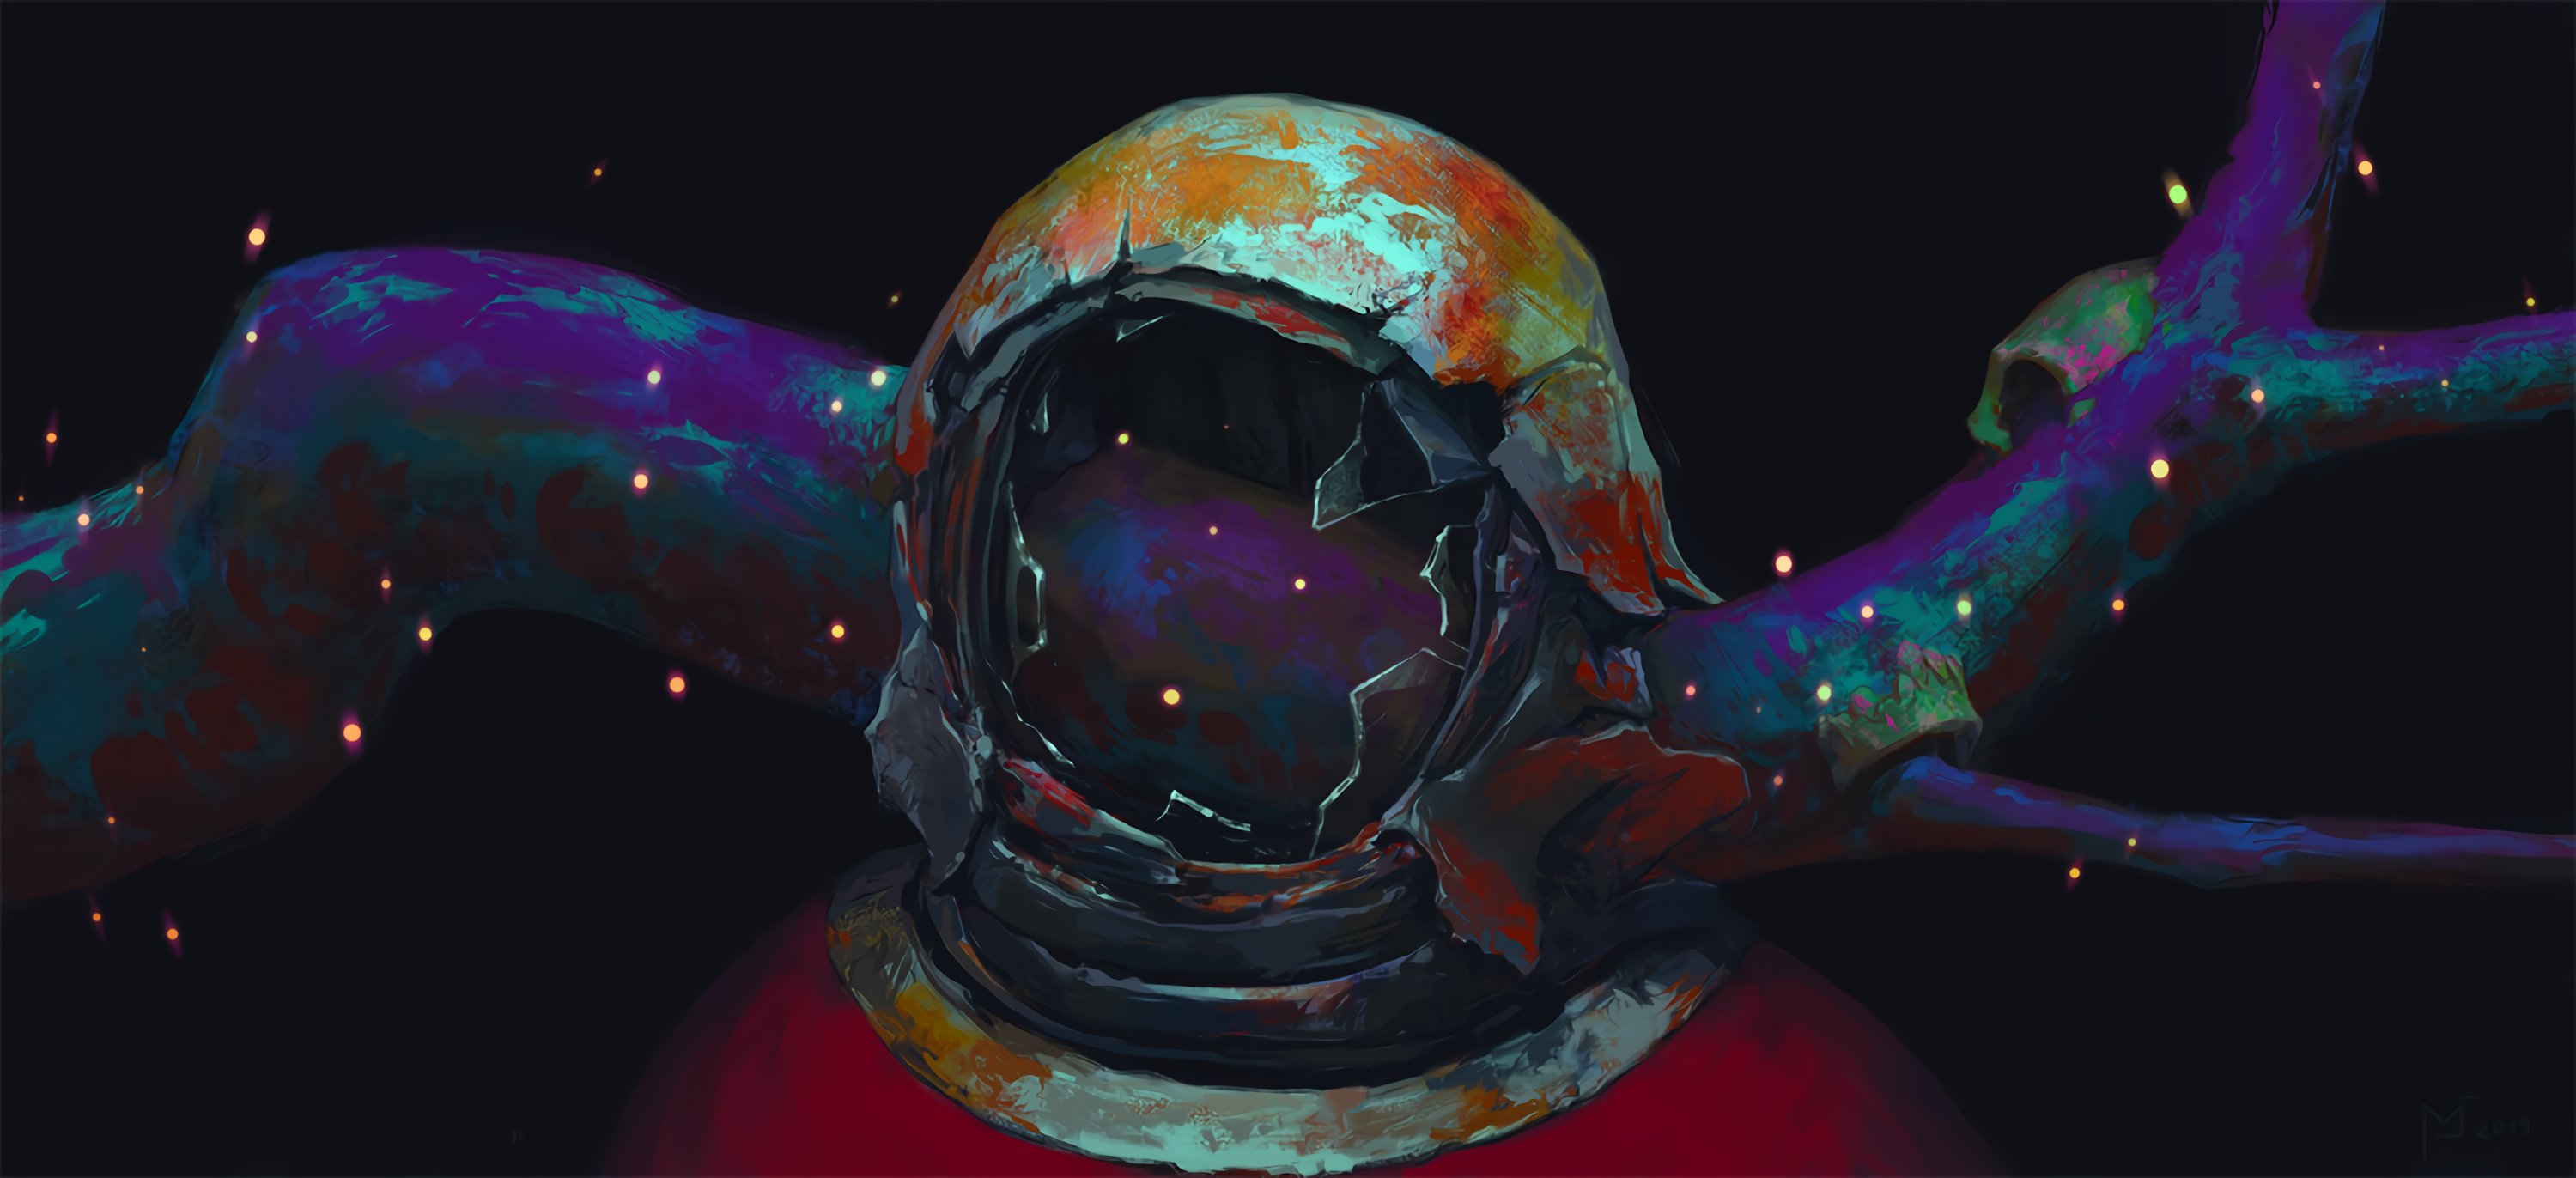 Wallpaper Astronaut Broken Helmet Branch Rust Fireflies